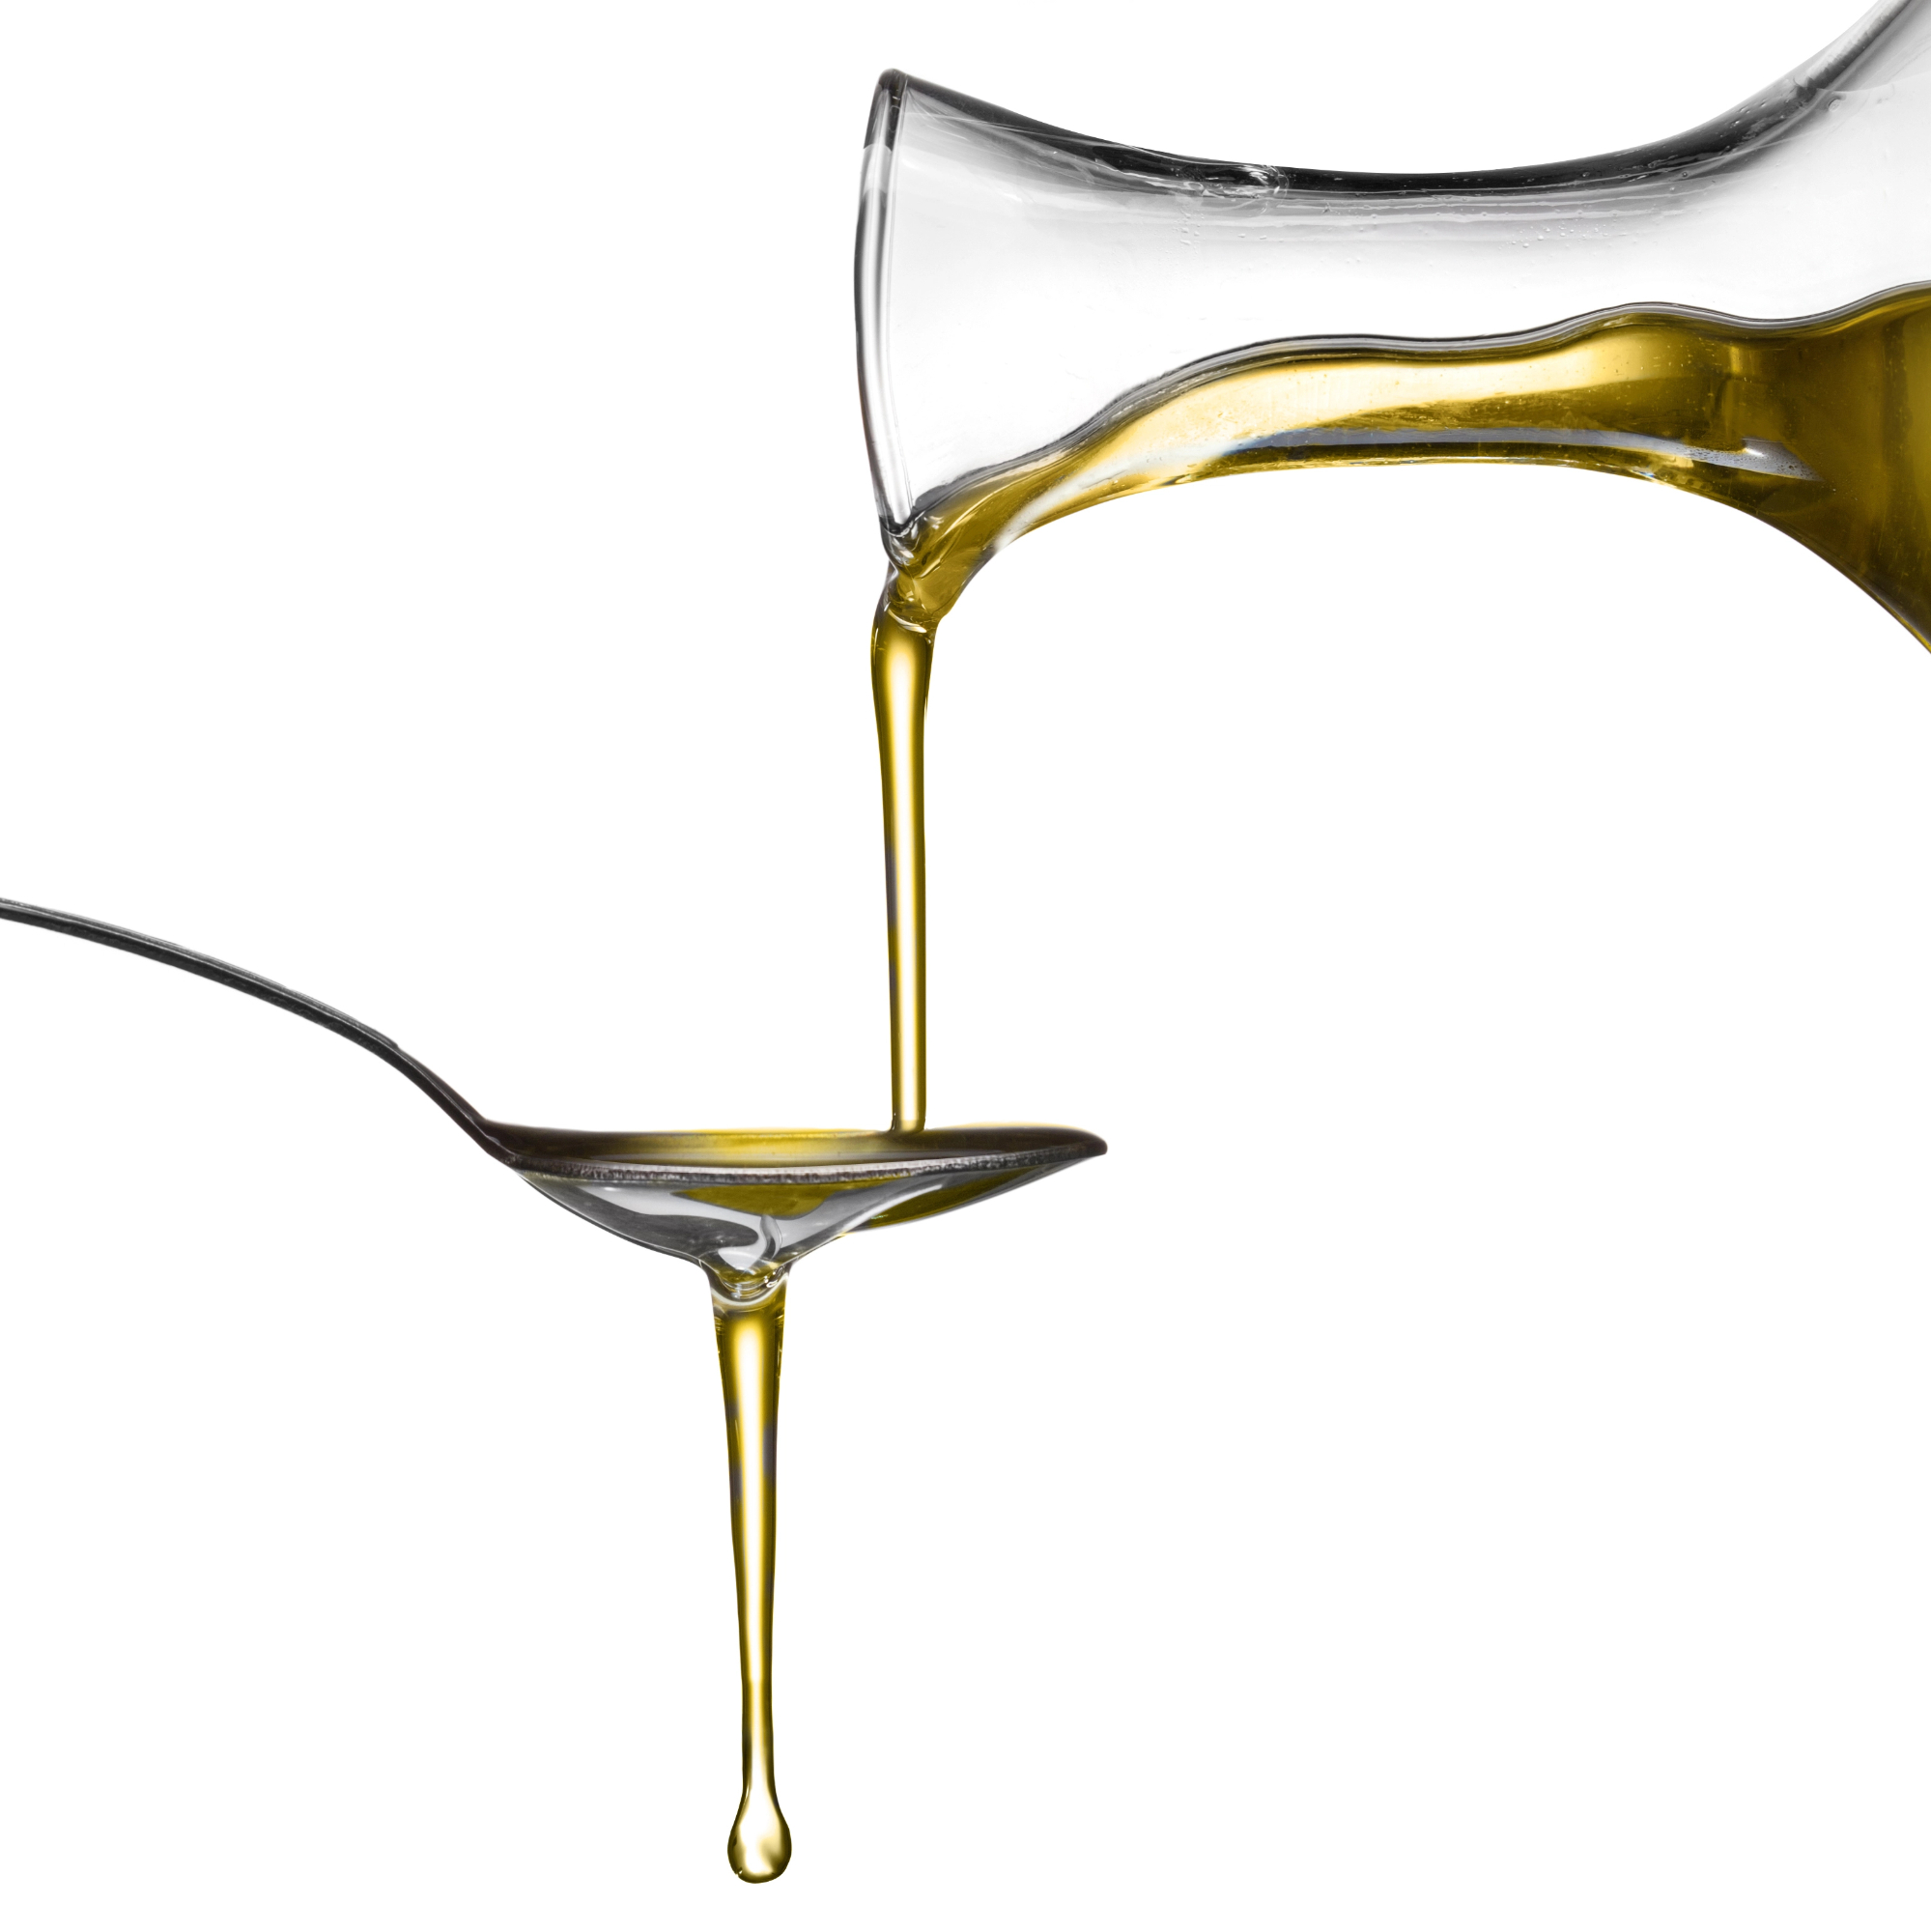 Olivno olje in žvrklanje